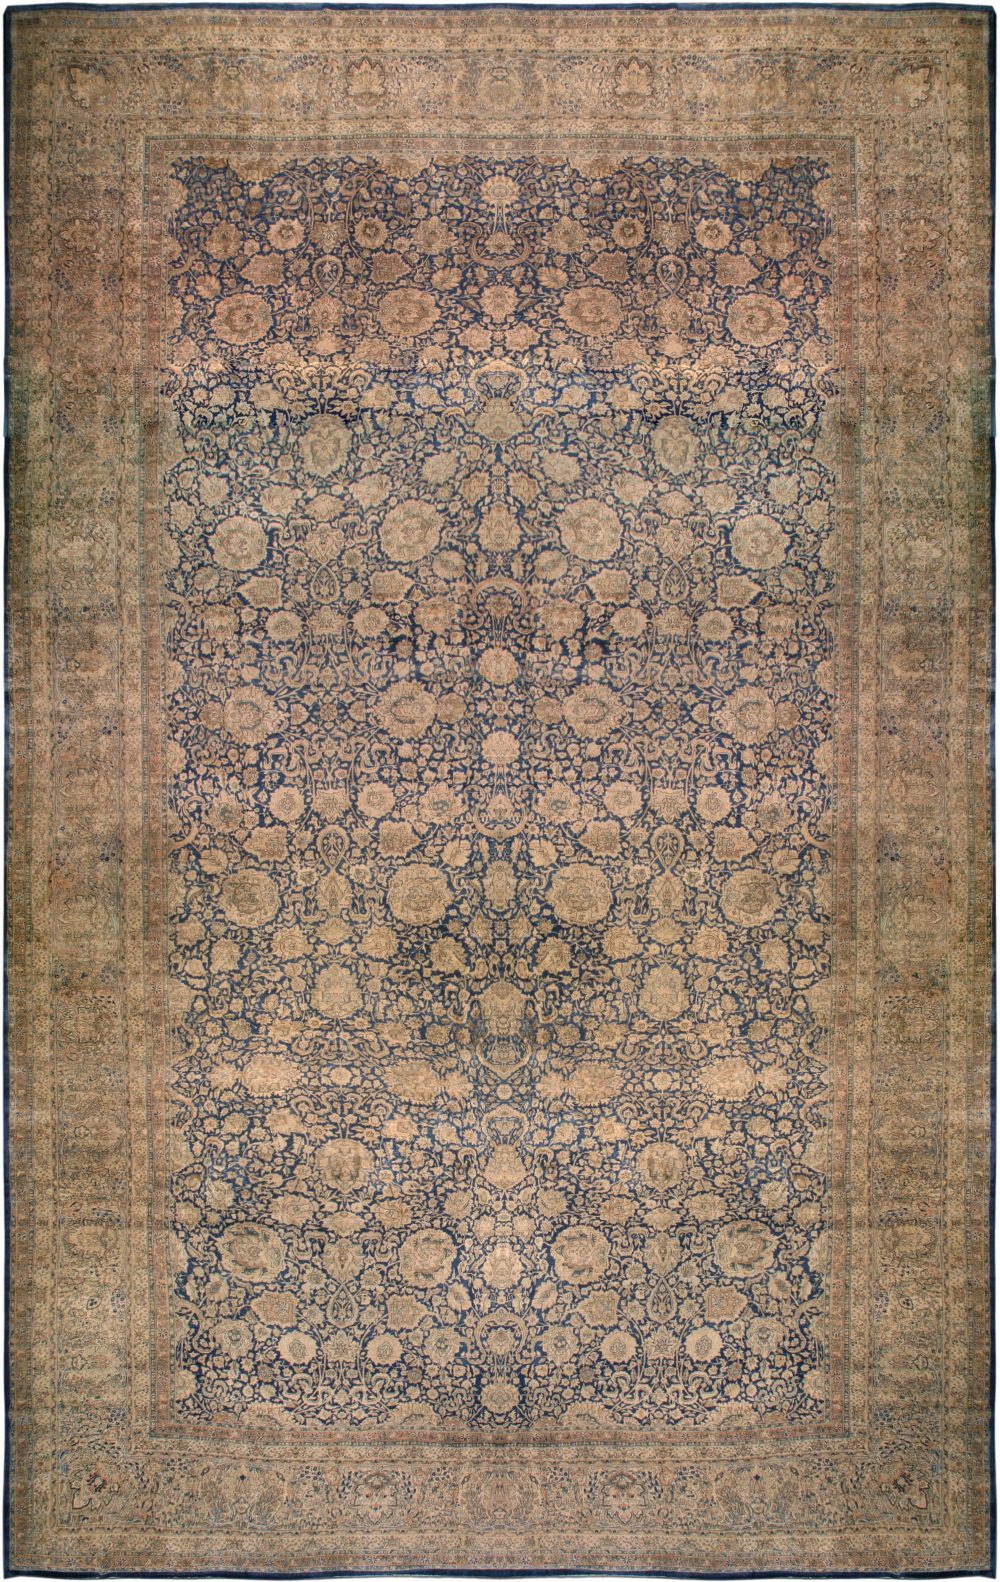 Oversized Authentic 19th Century Persian Kirman Botanic Handmade Wool Rug BB6698